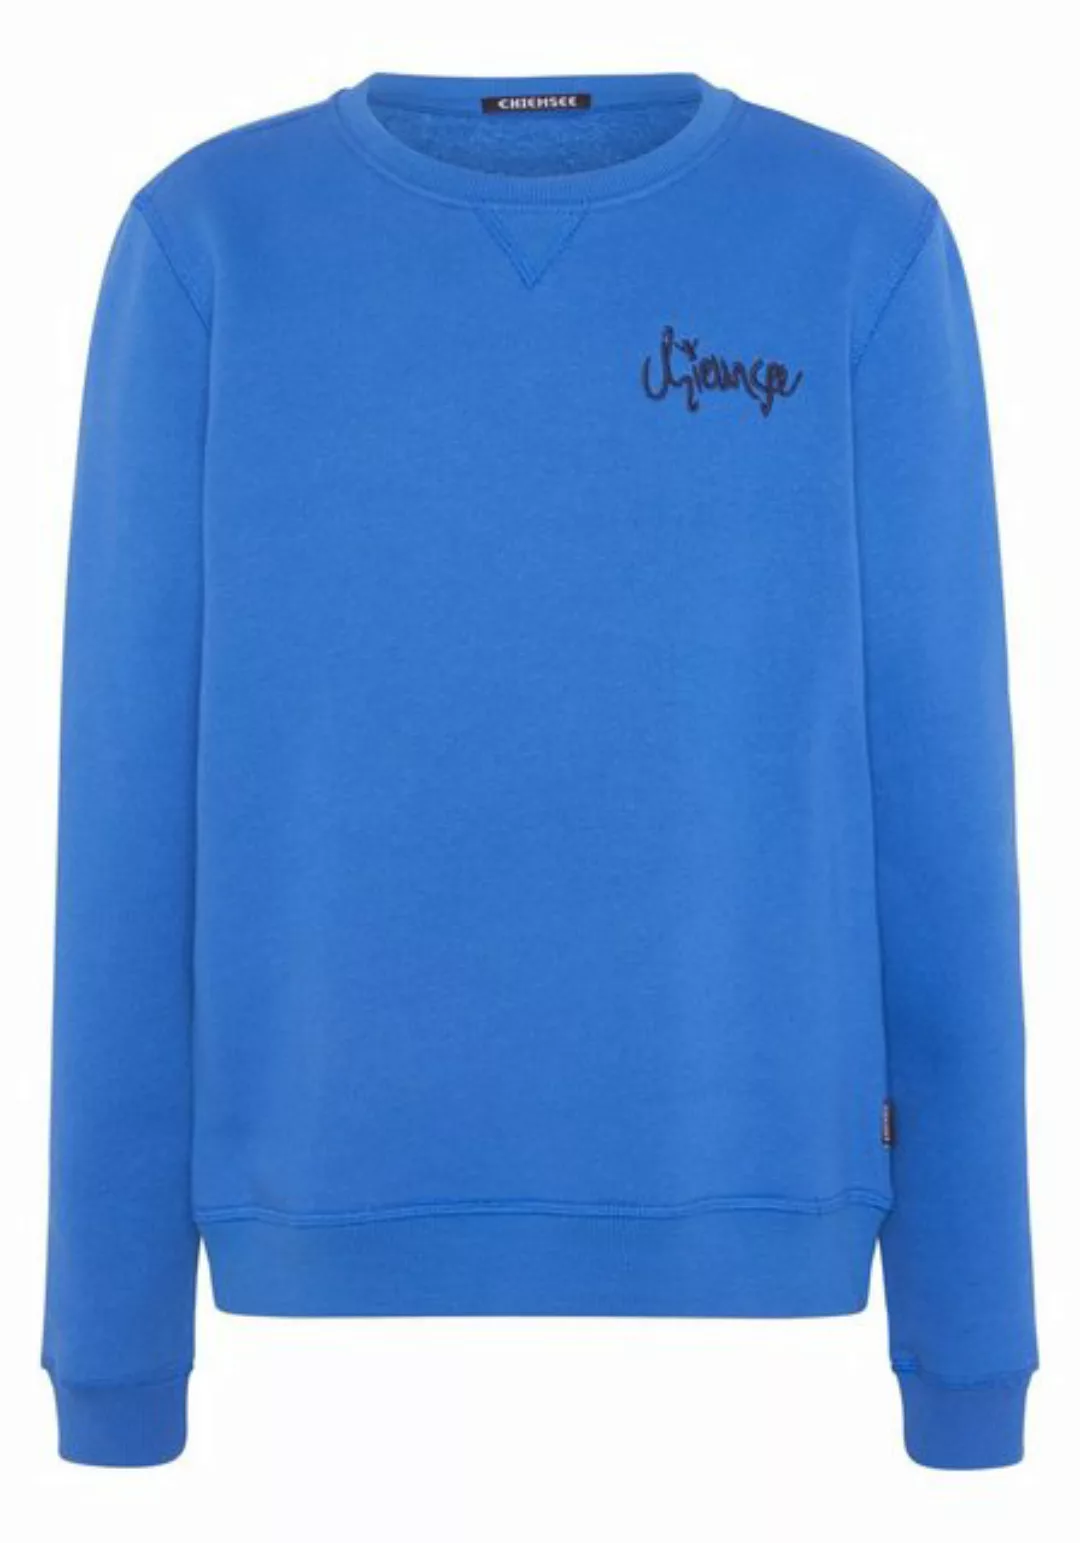 Chiemsee Sweatshirt Sweatshirt mit Jumper-Motiv hinten 1 günstig online kaufen